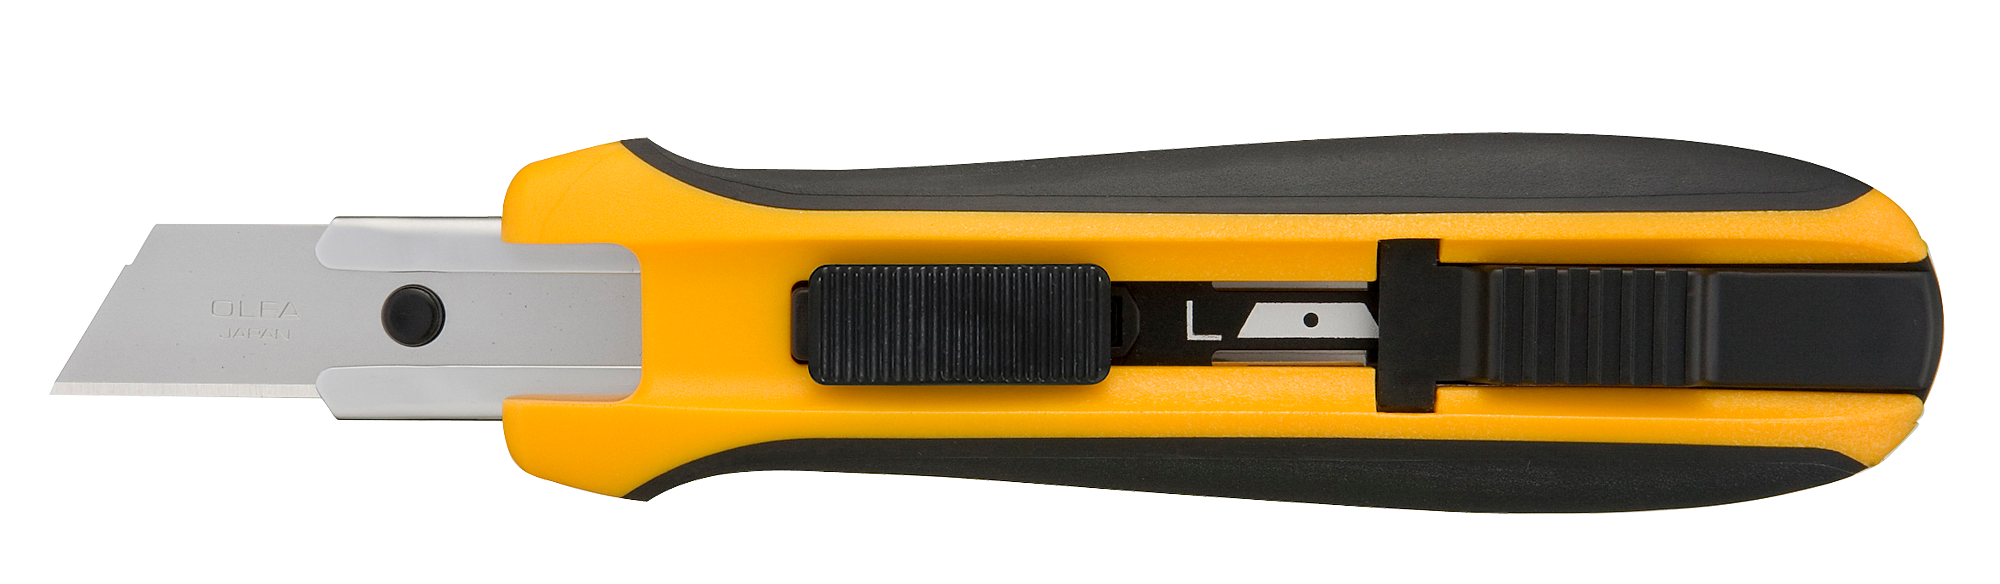 Нож монтажный, автоматическая фиксация, лезвие: 1.75 см / выдвижное / трапециевидное, OLFA UTC-1 (OL-UTC-1)